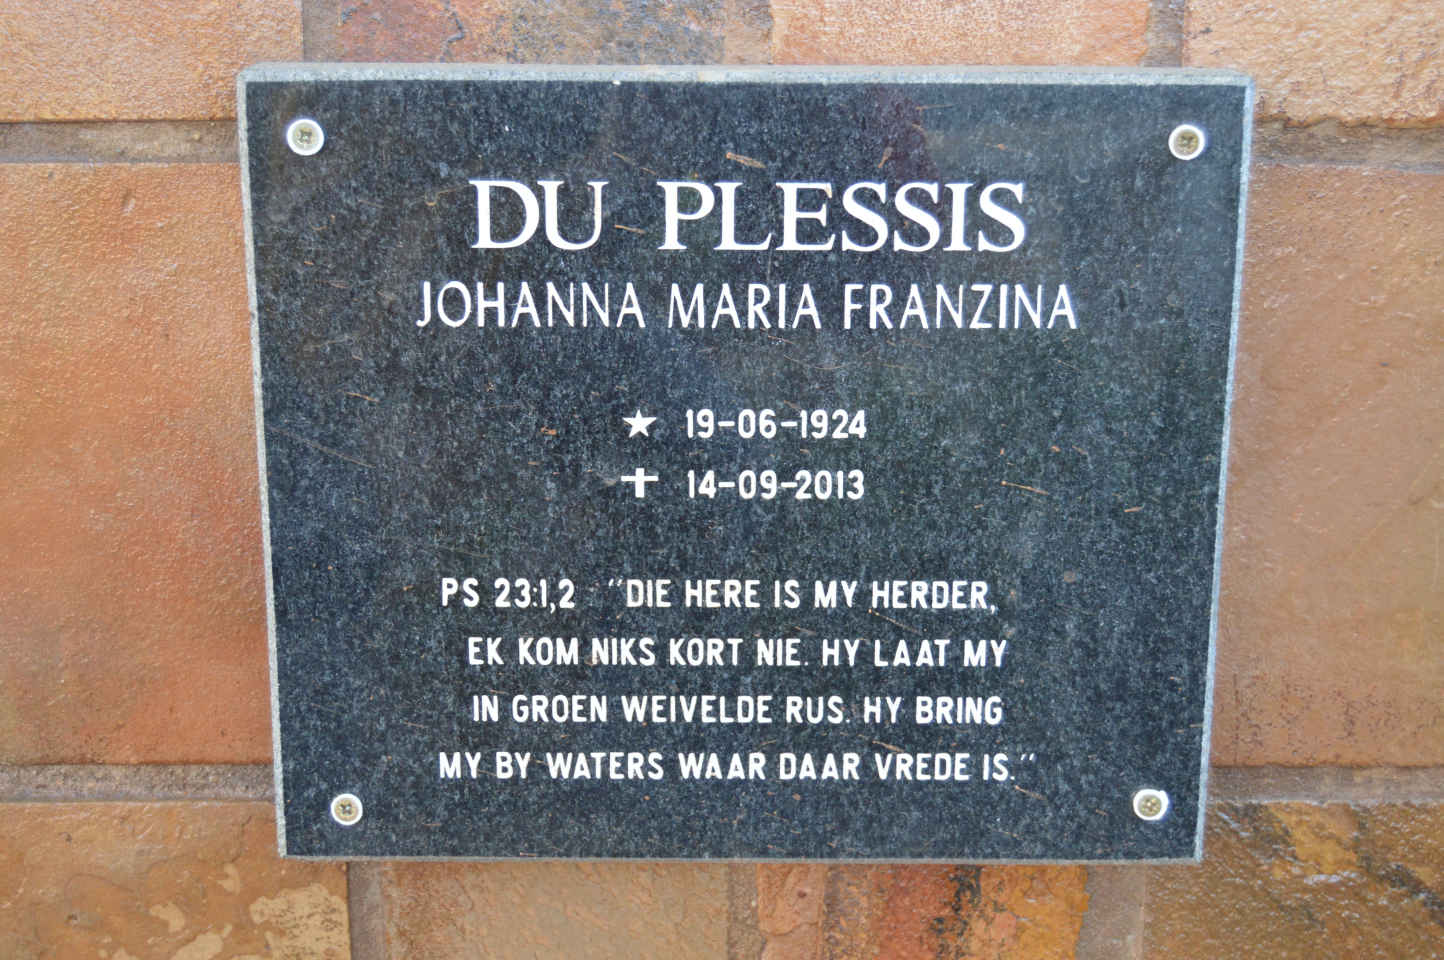 PLESSIS Johanna Maria Franzina, du 1924-2013